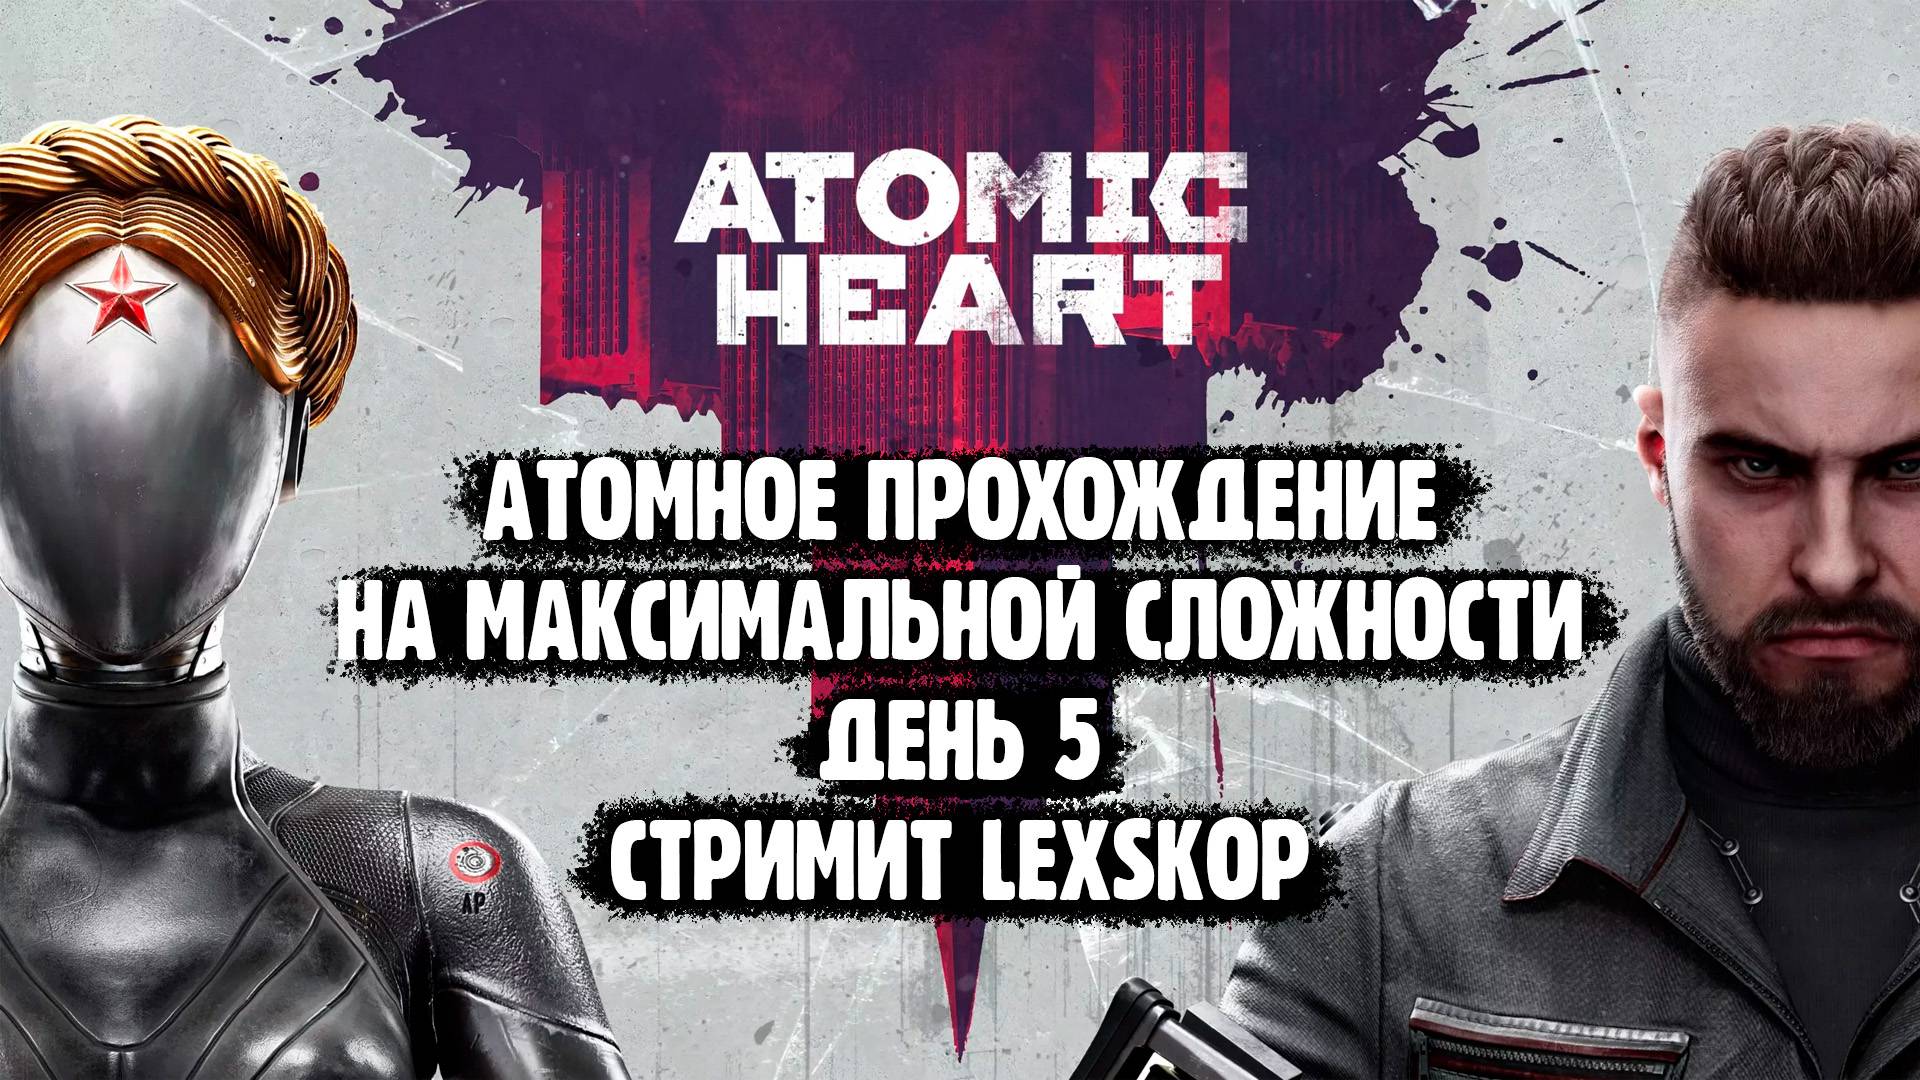 Atomic Heart | День 5 | Максимальная сложность | Атомное прохождение